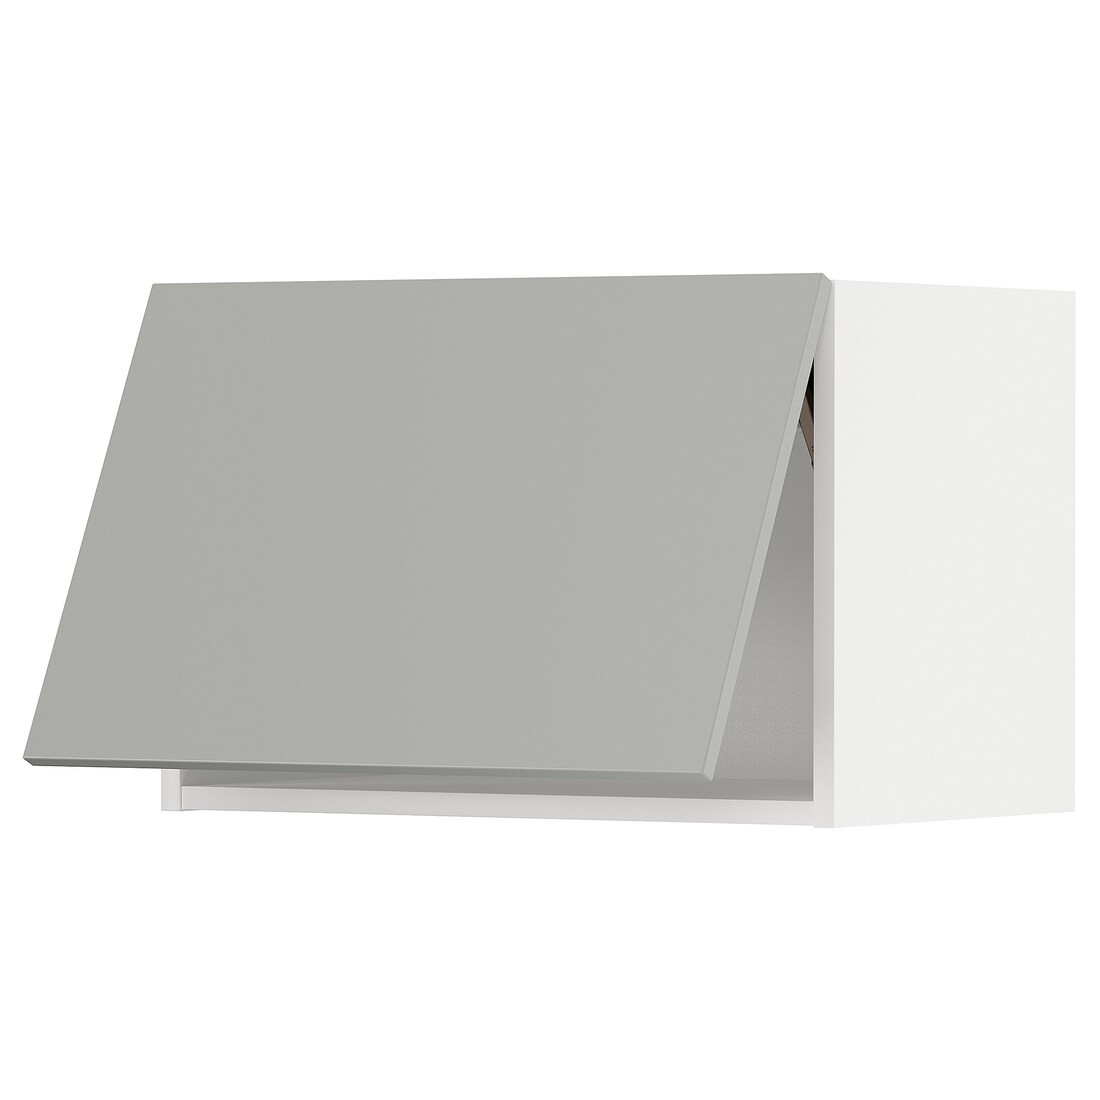 METOD Навесной горизонтальный шкаф, белый / Хавсторп светло-серый, 60x40 см